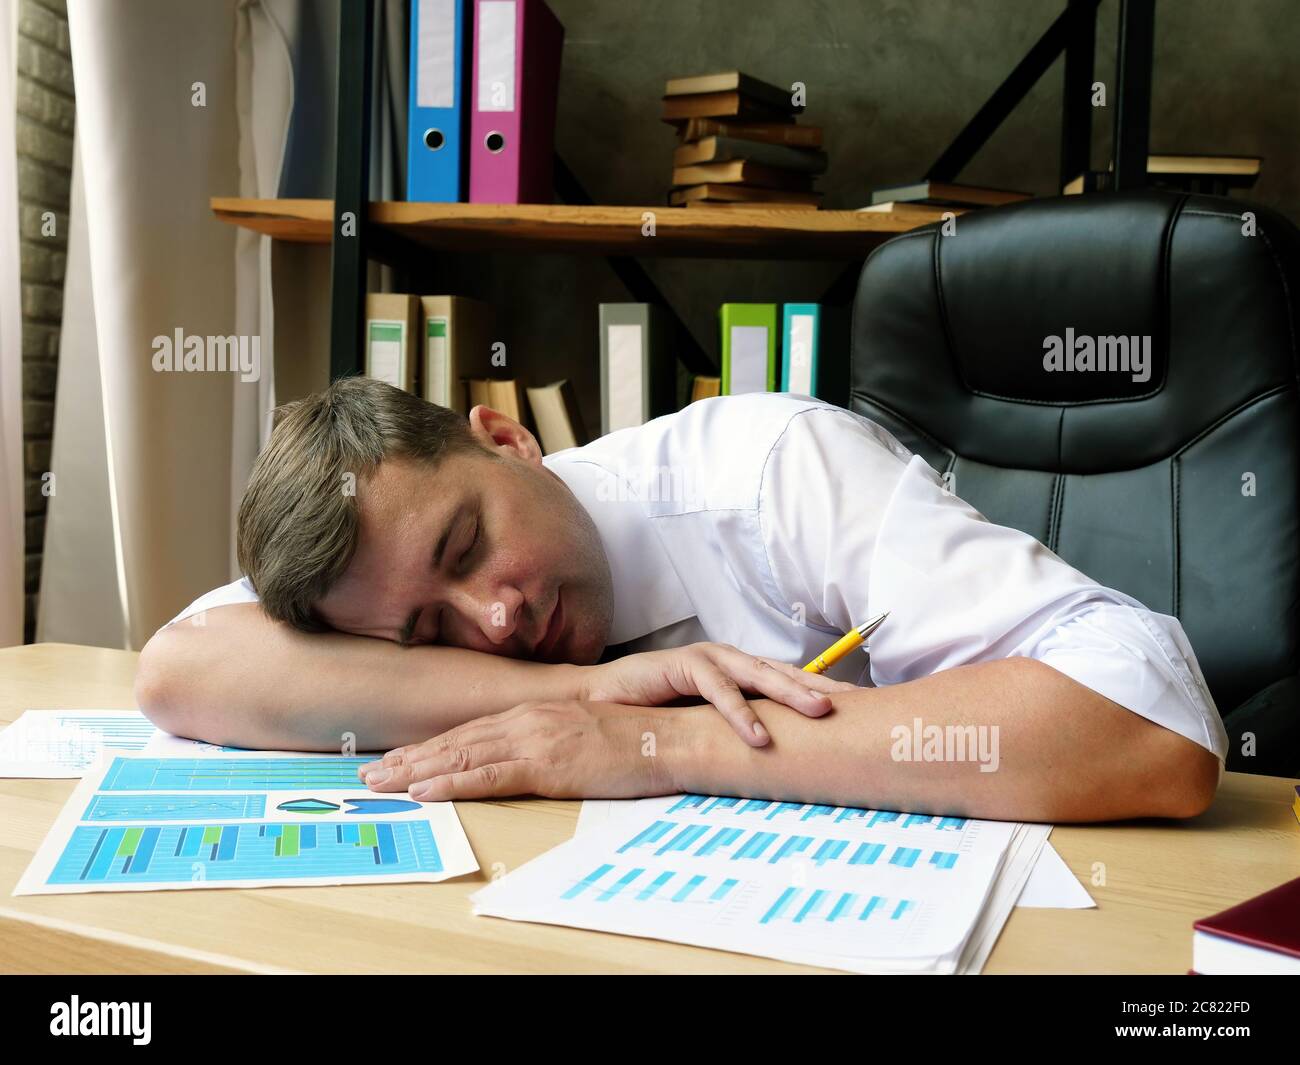 Un empleado cansado duerme en la mesa. Síndrome de fatiga crónica. Foto de stock